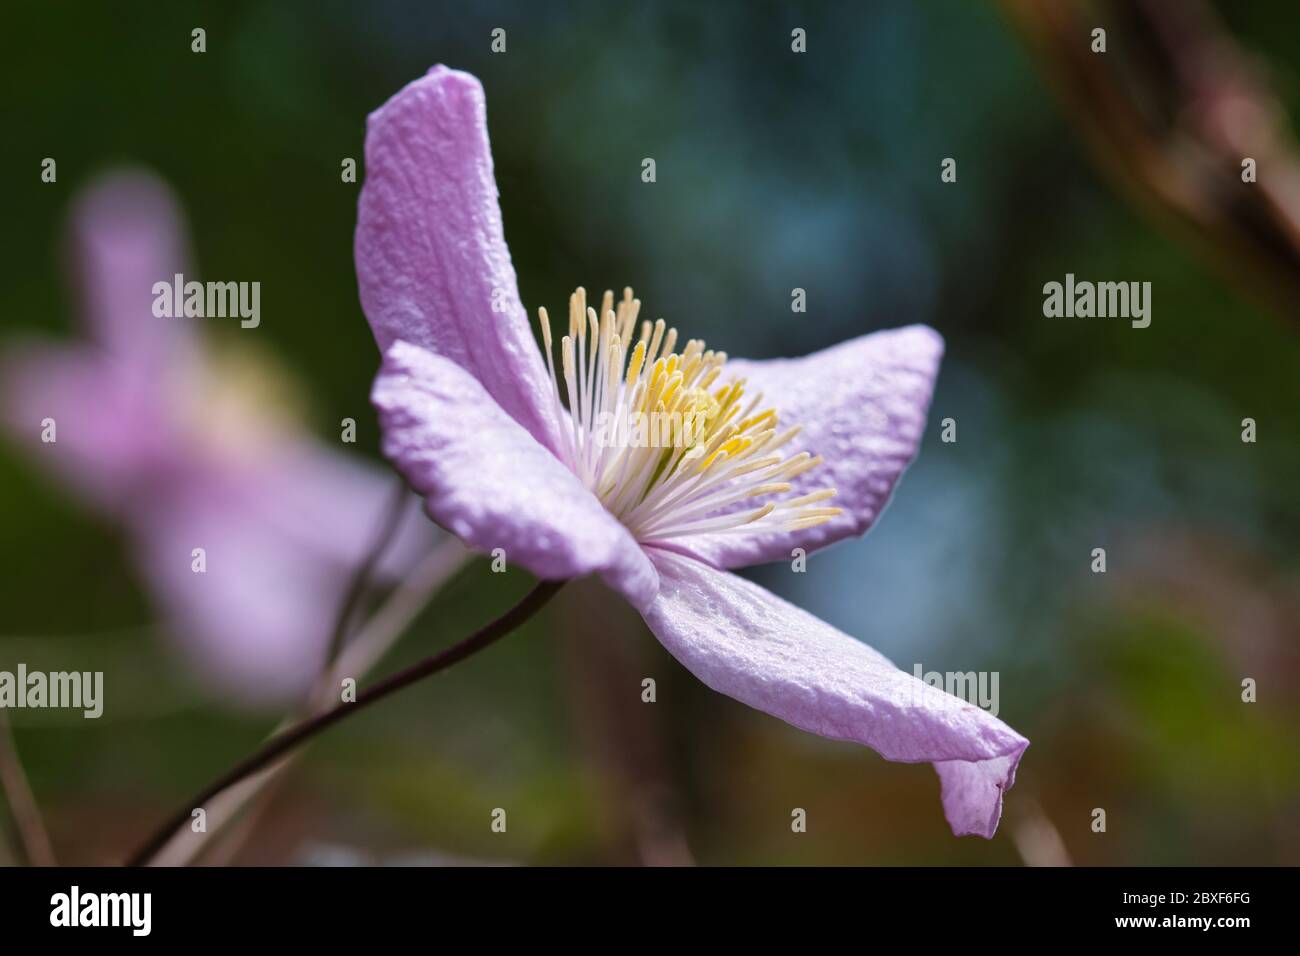 Fleurs clematis rose pâle, rose délicate avec quatre pétales et pièce maîtresse avec des tiges de fleurs jaunes, sur de longues vignes grimpantes ligneuses avec du vert Banque D'Images